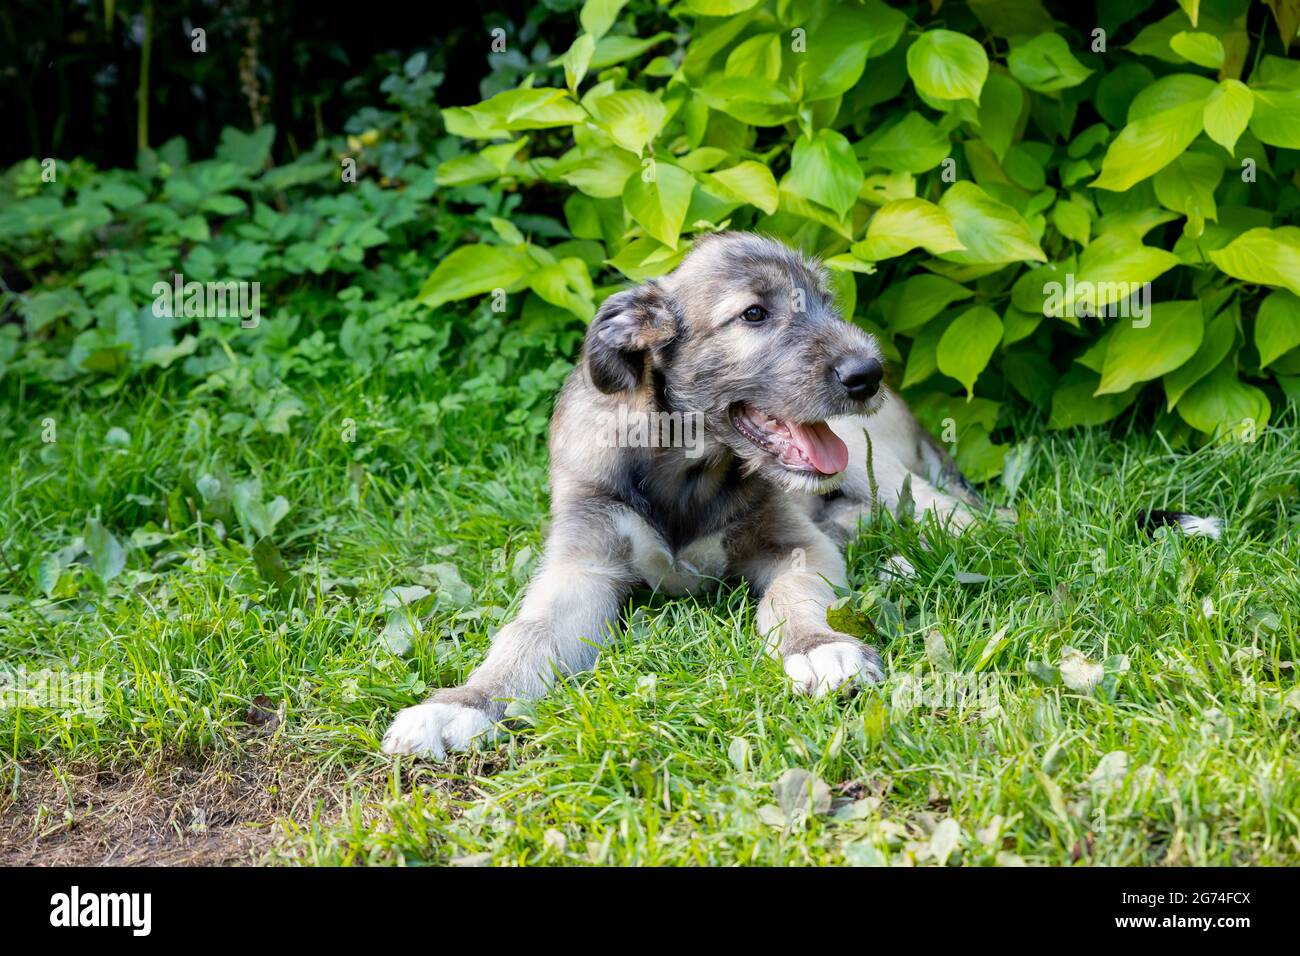 Drei Monate alter irischer Wolfhound im Garten.der Welpe der Rasse Irish Wolfhound ruht auf einem grünen Gras im Hof. Stockfoto